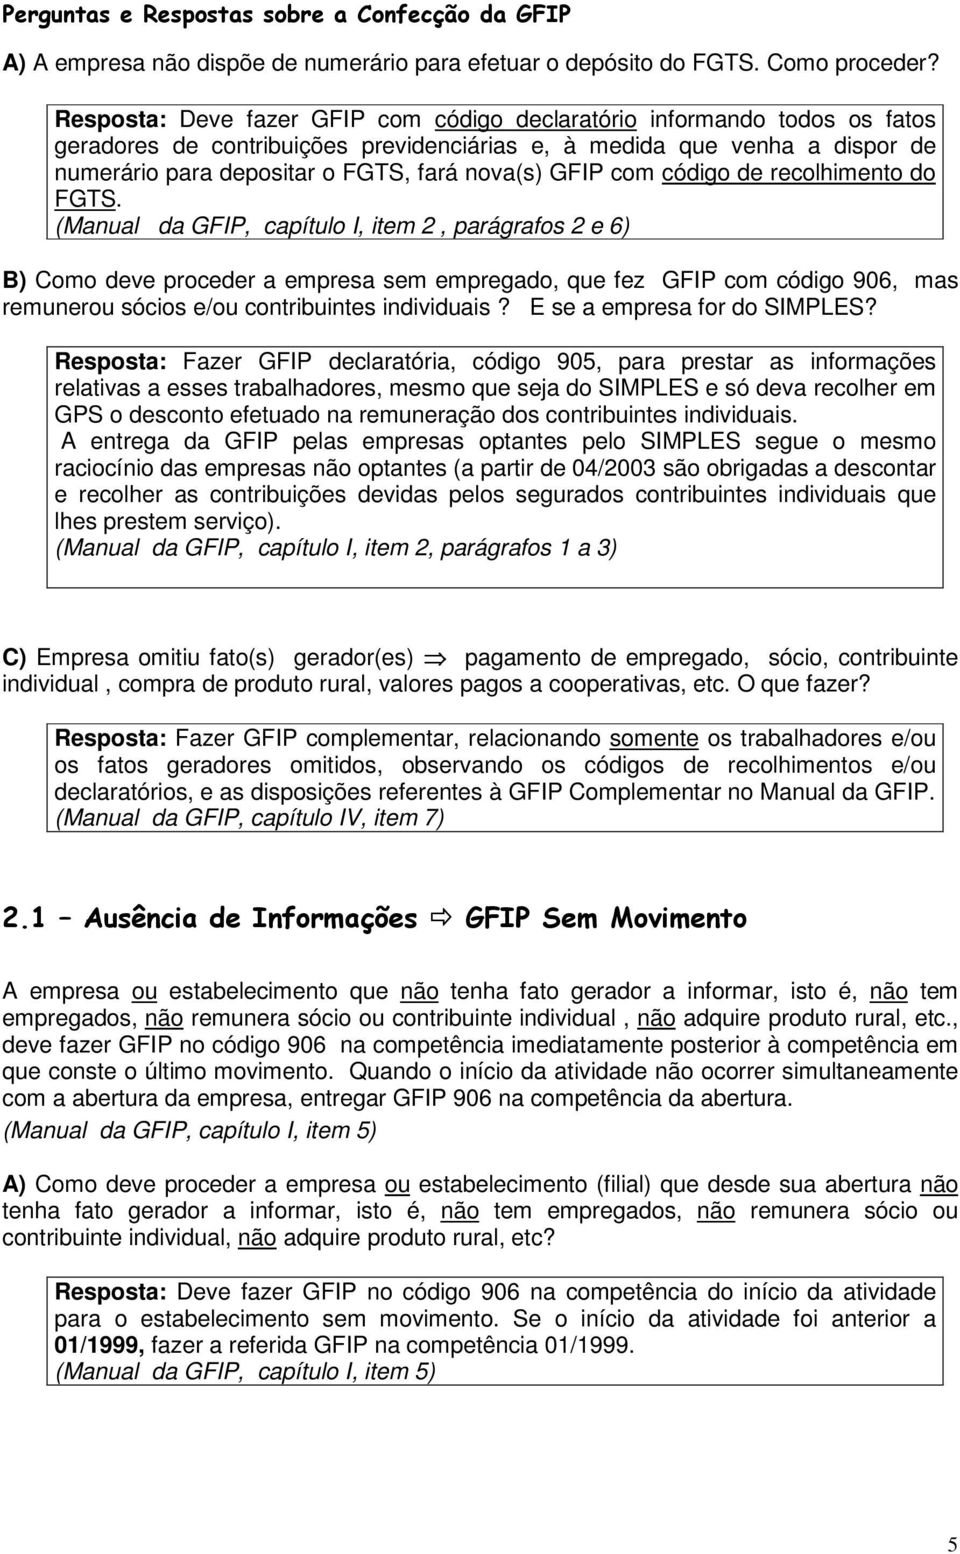 GFIP com código de recolhimento do FGTS.